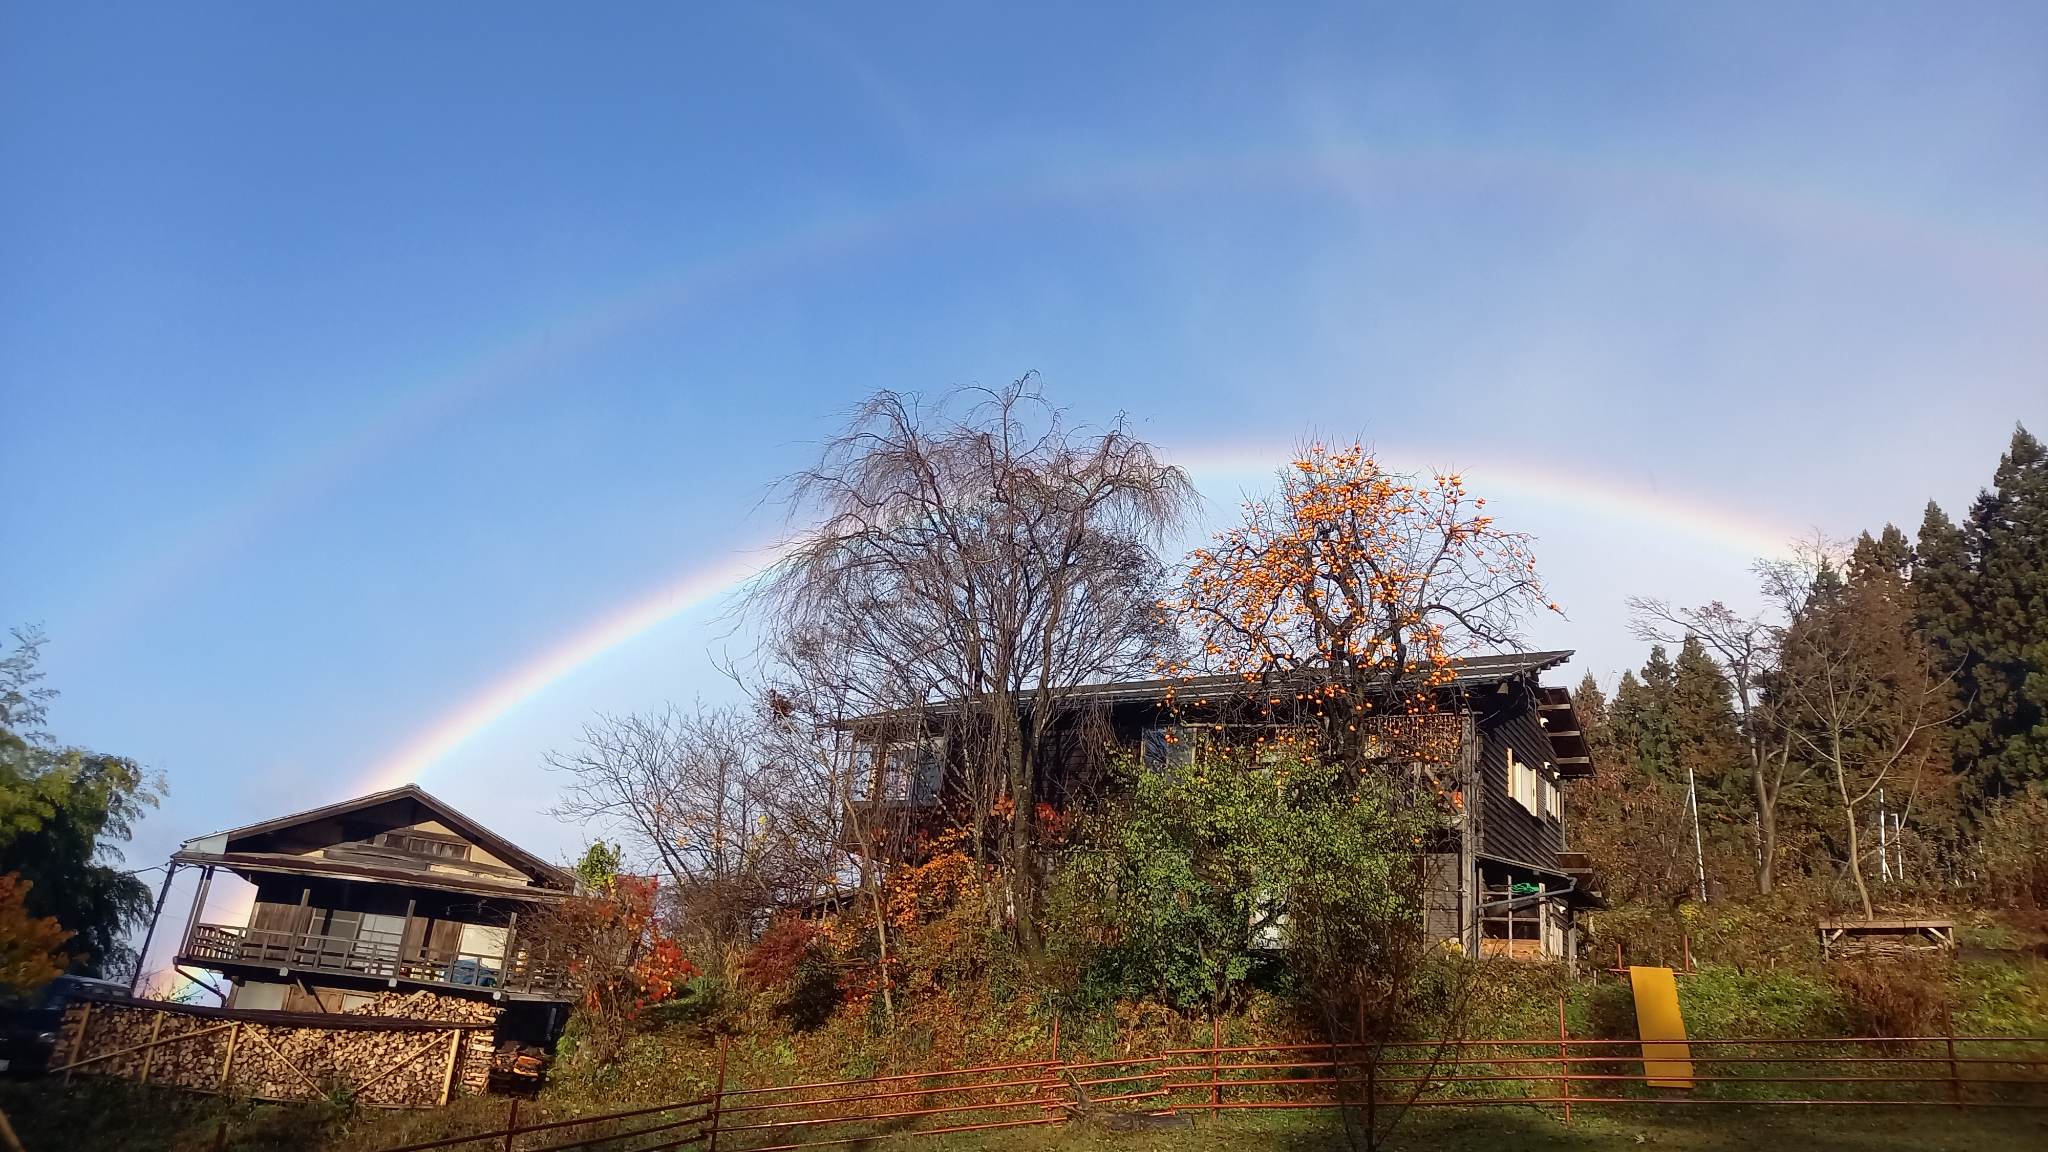 こちら、我らのベース基地「山の家」（の横顔）！秋のある日、真上に虹がかかった伝説の写真